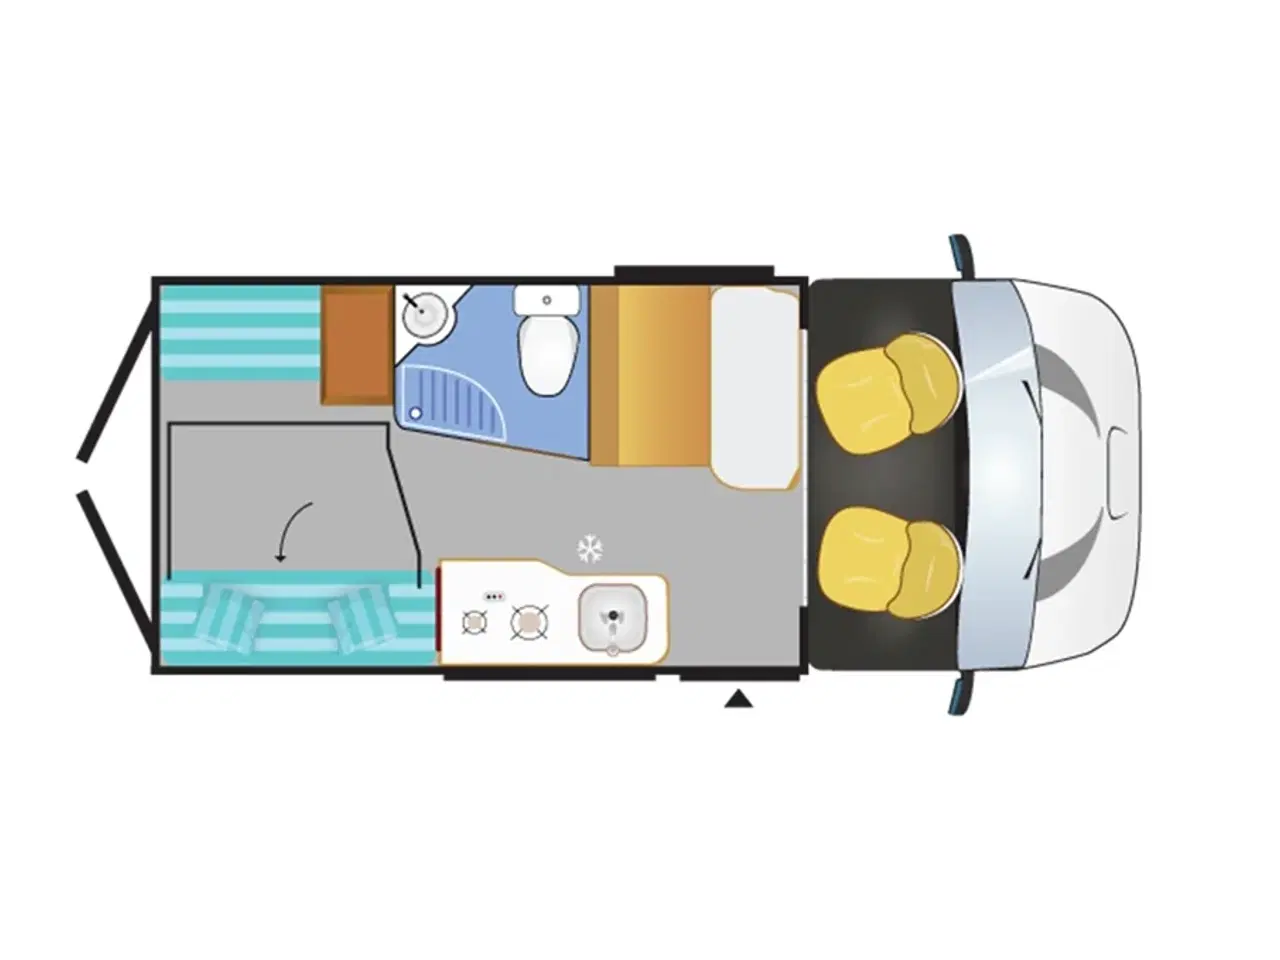 Billede 26 - 2019 - Chausson Twist 594 S Van   Anvisningsbil. Flot, kort og effektiv med Inverter, to bodelsbatterier, Avara-alarm inde og ude samt Chaussons fantastiske VPS-isolering